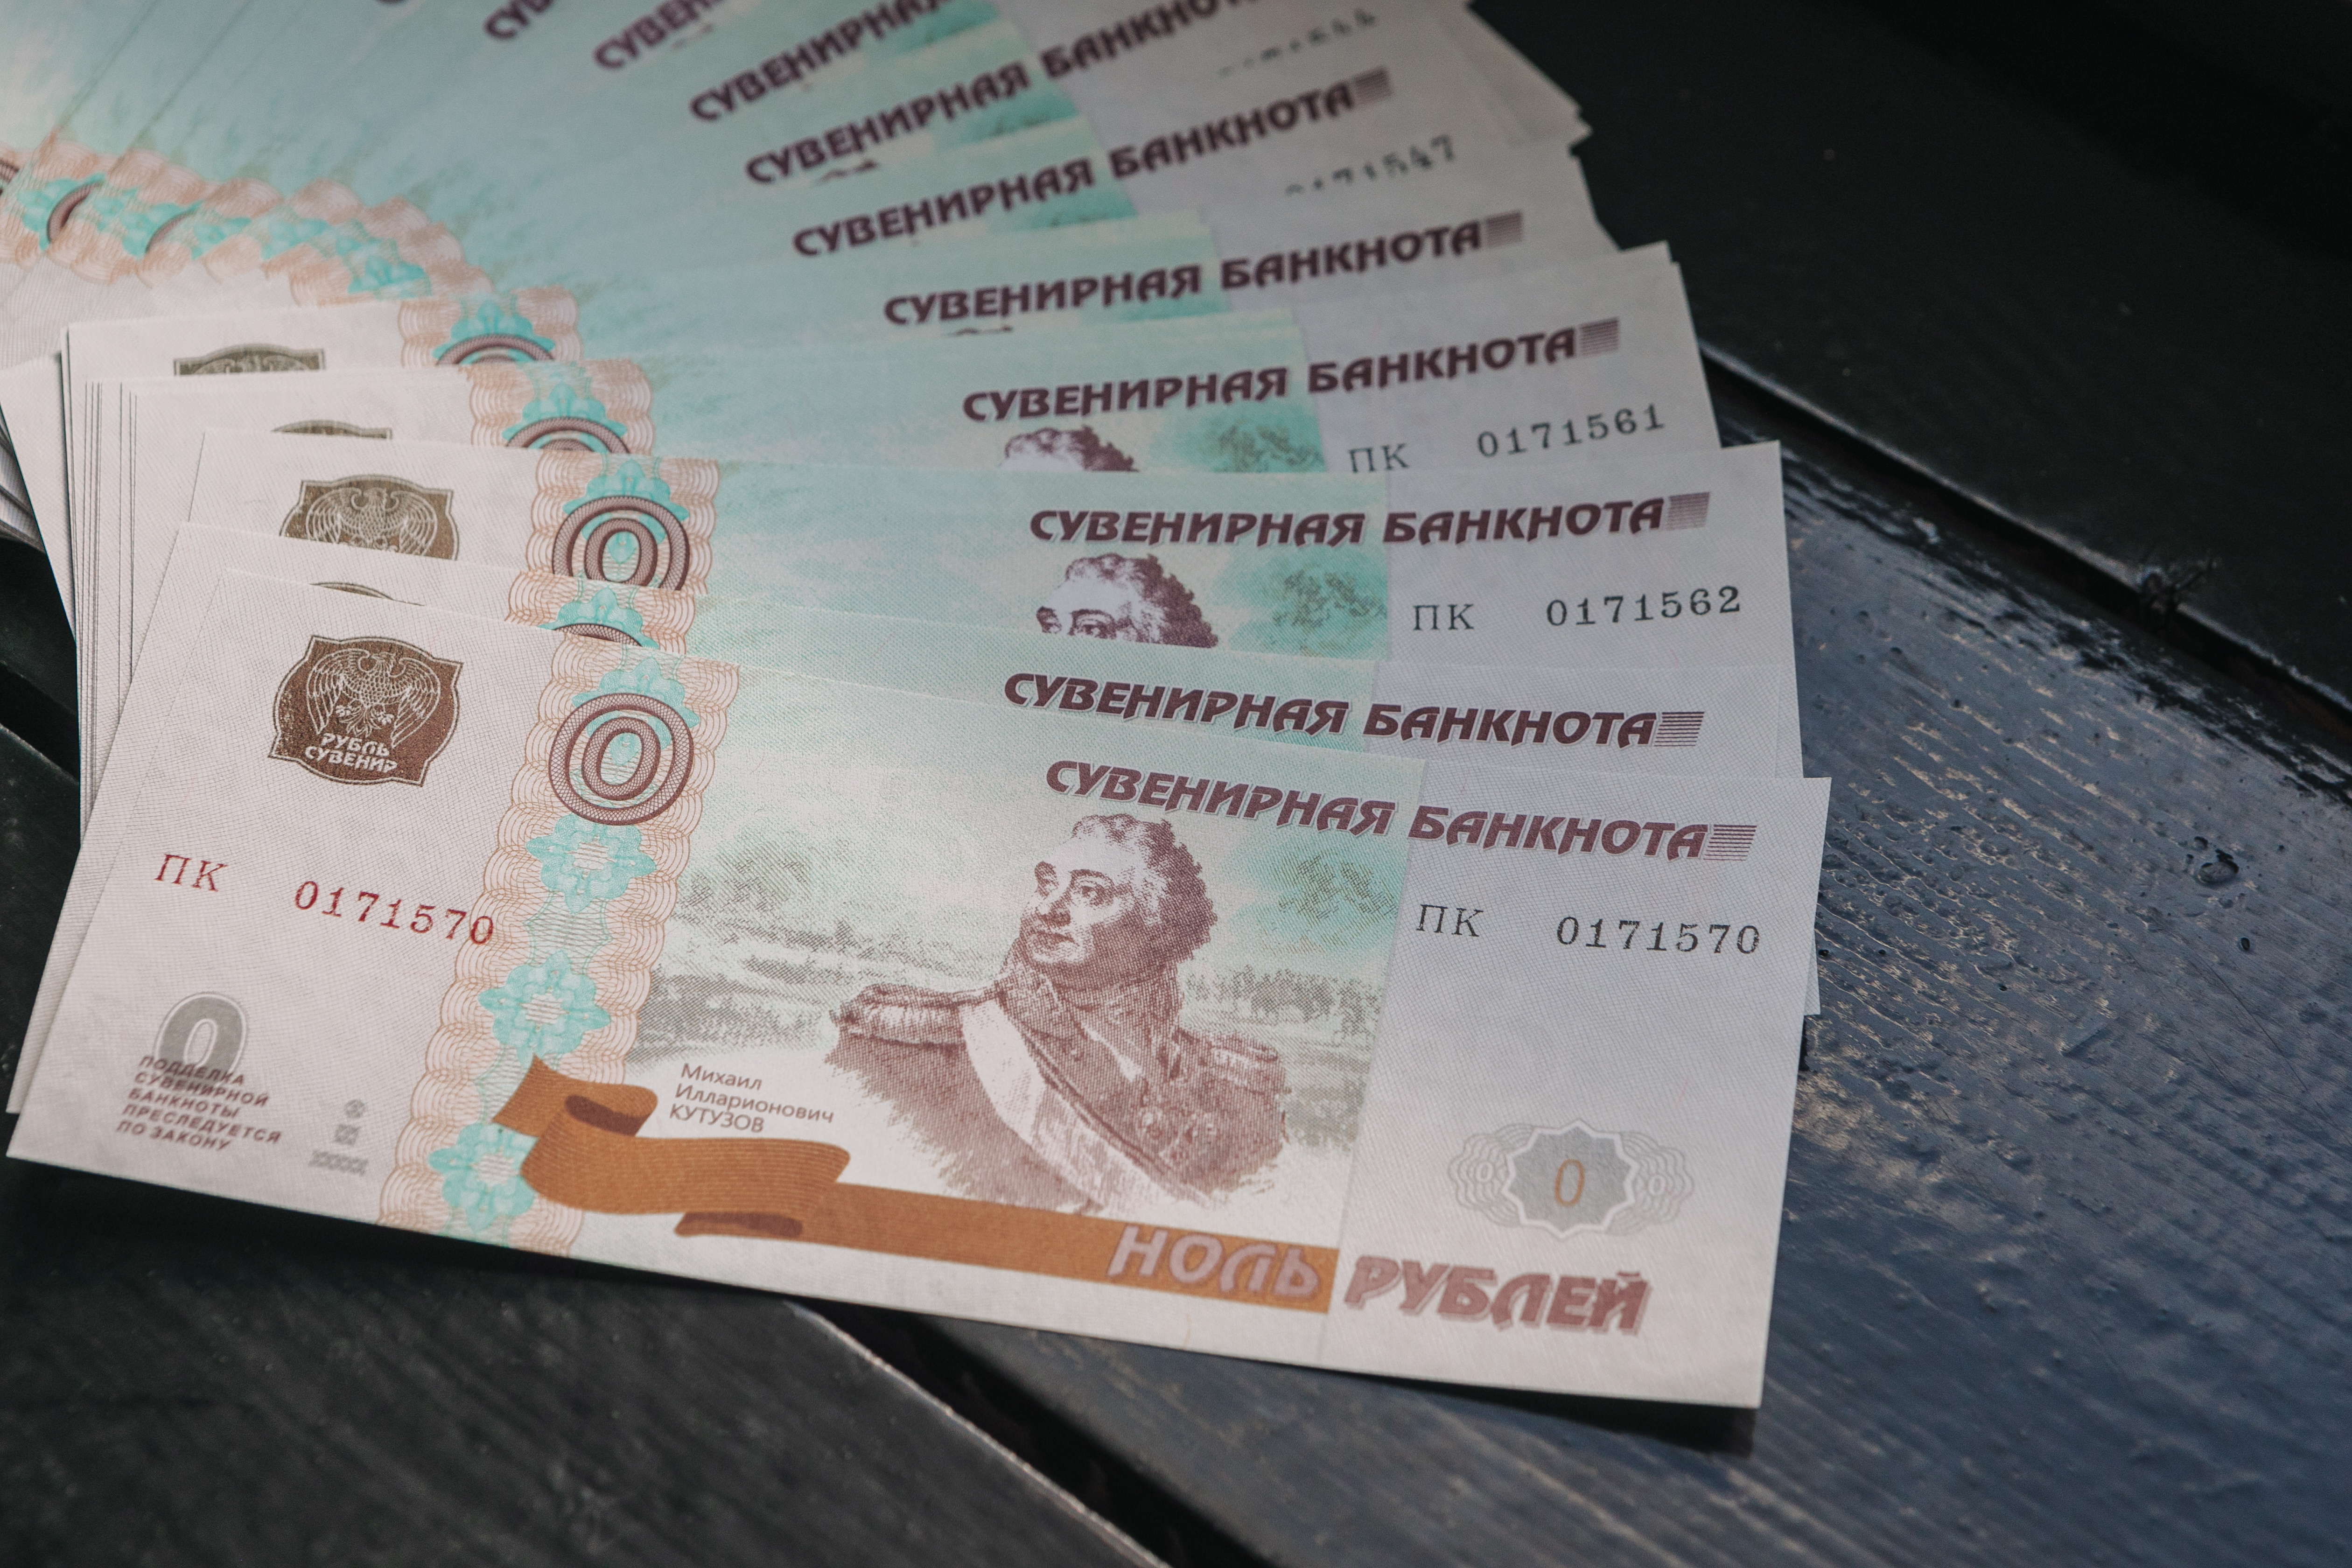 Медный всадник станет символом Санкт-Петербурга на сувенирной купюре с надписью «Ноль рублей»